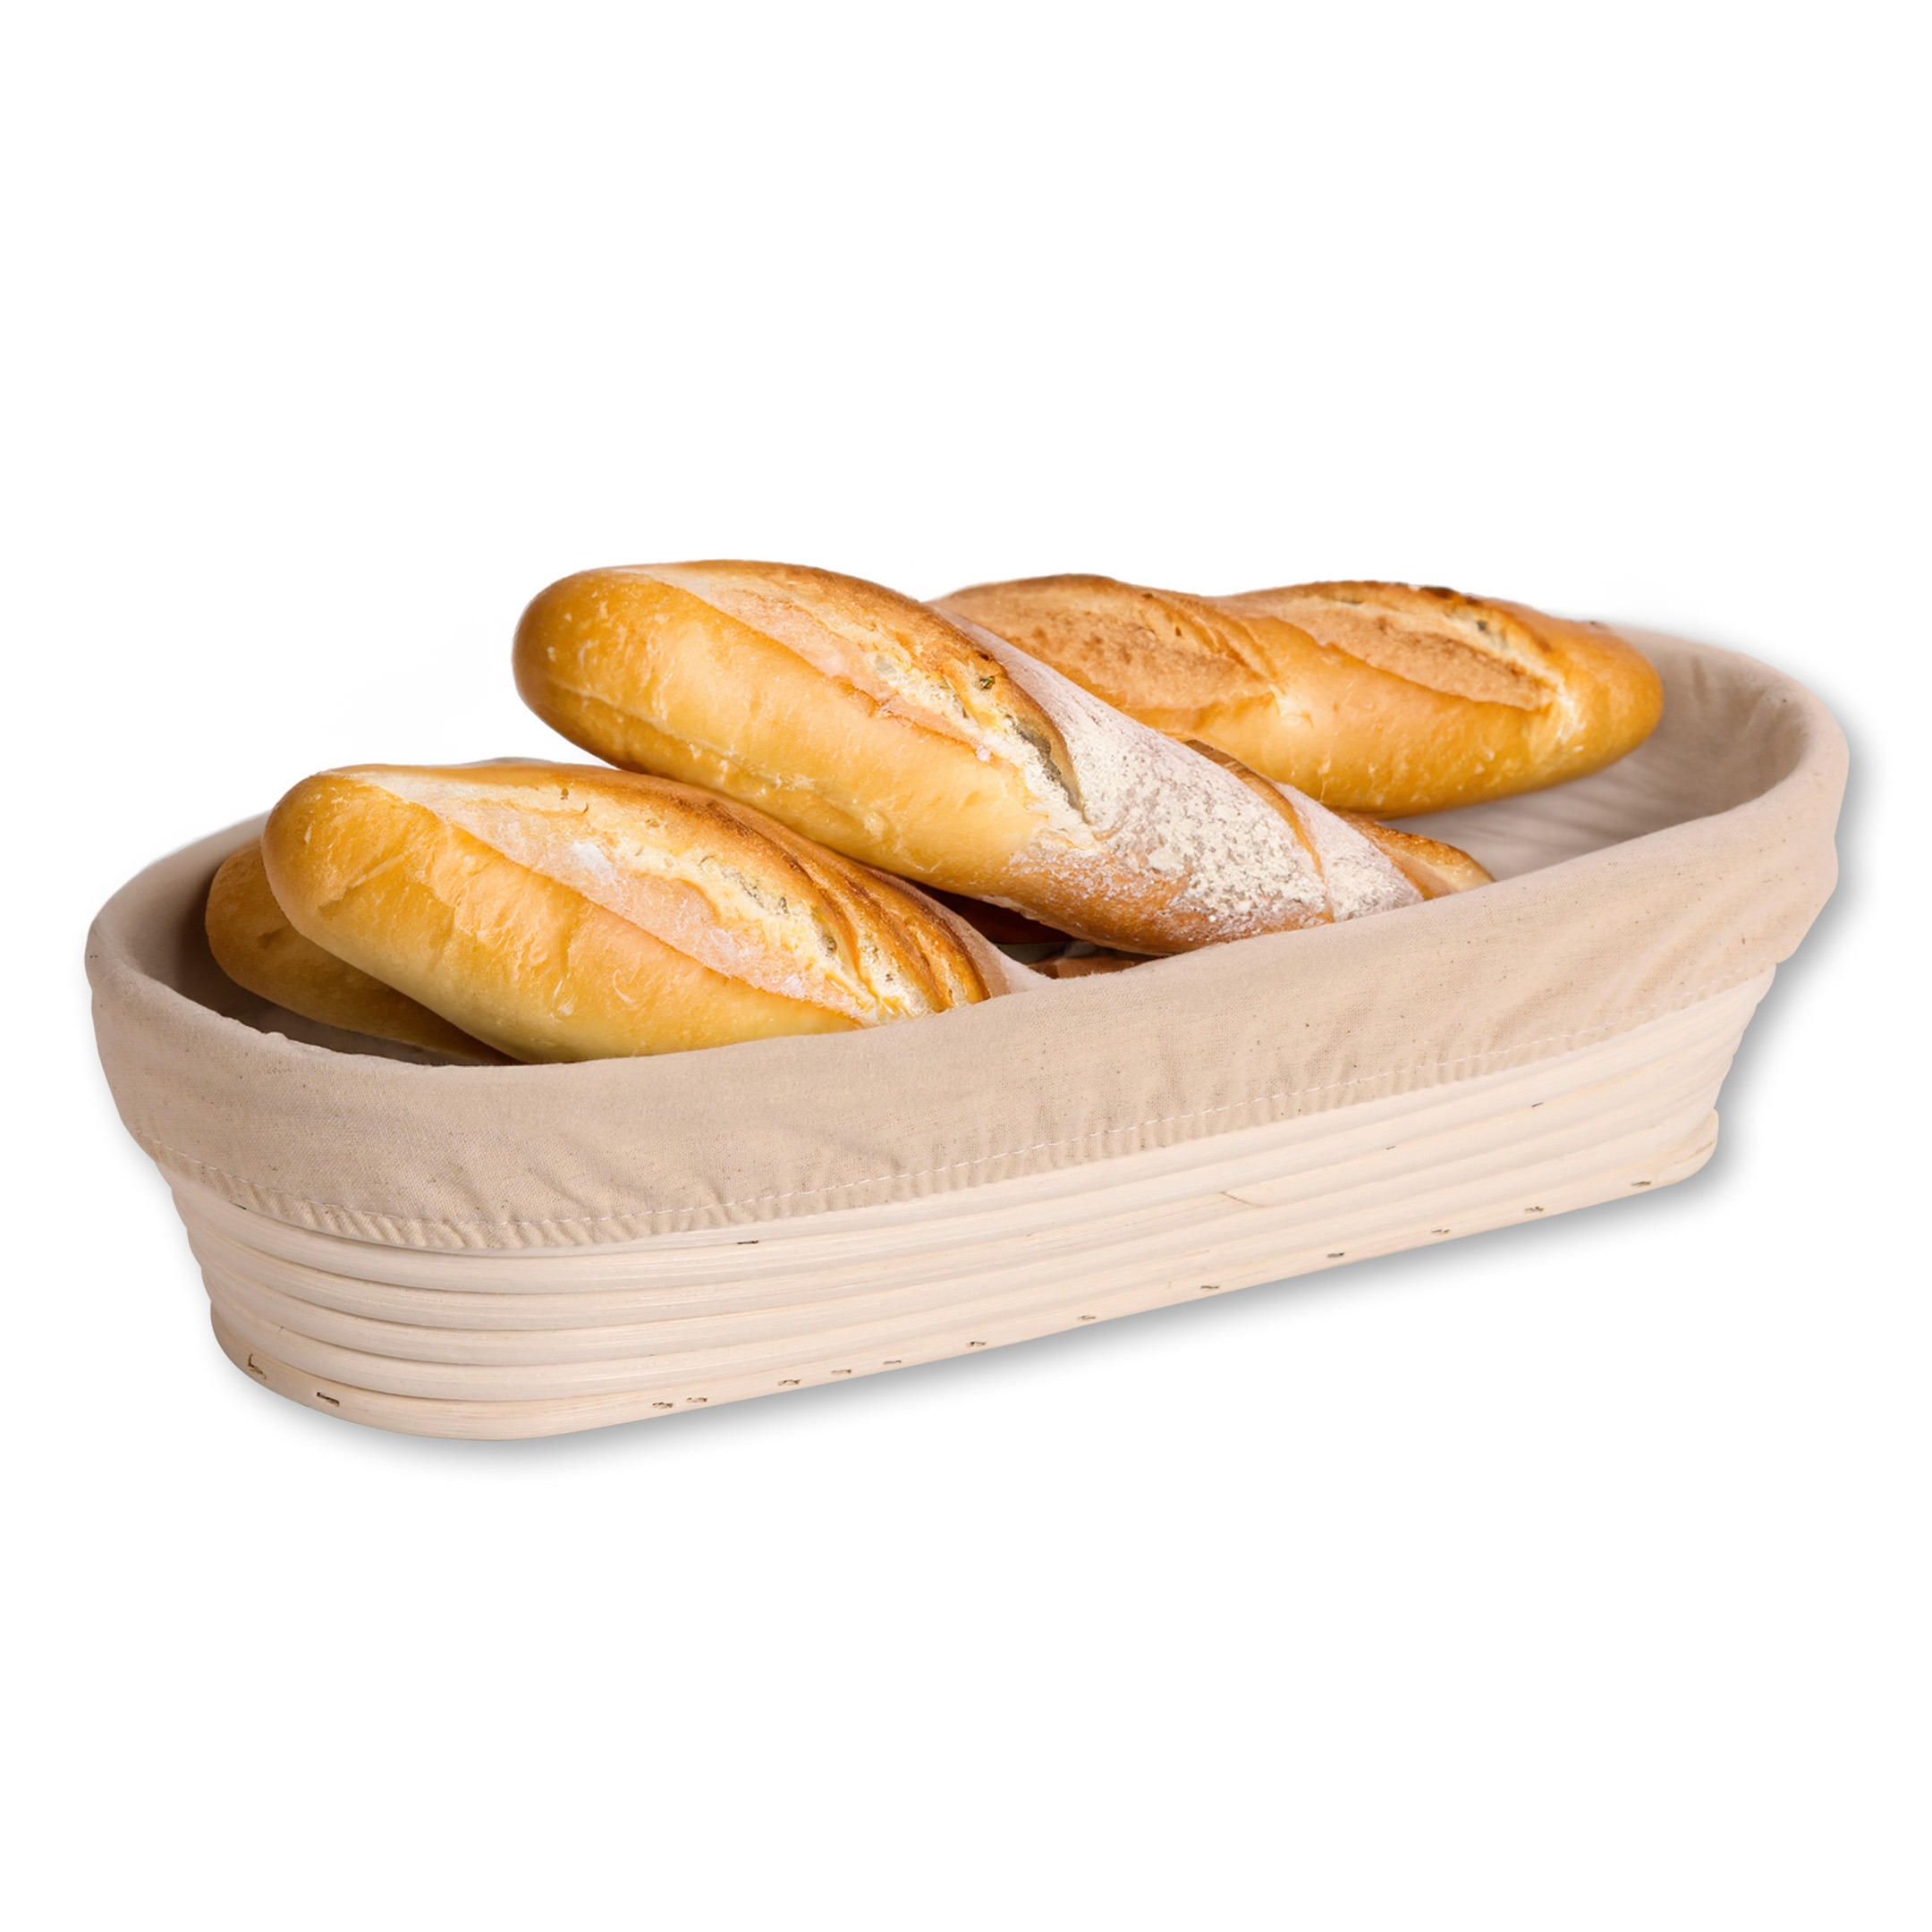 Kesper Broodmandje speciaal voor afbakbroodjes - nagaren/niet uitdrogen - hoes - L35 x B15 x H8 cm -